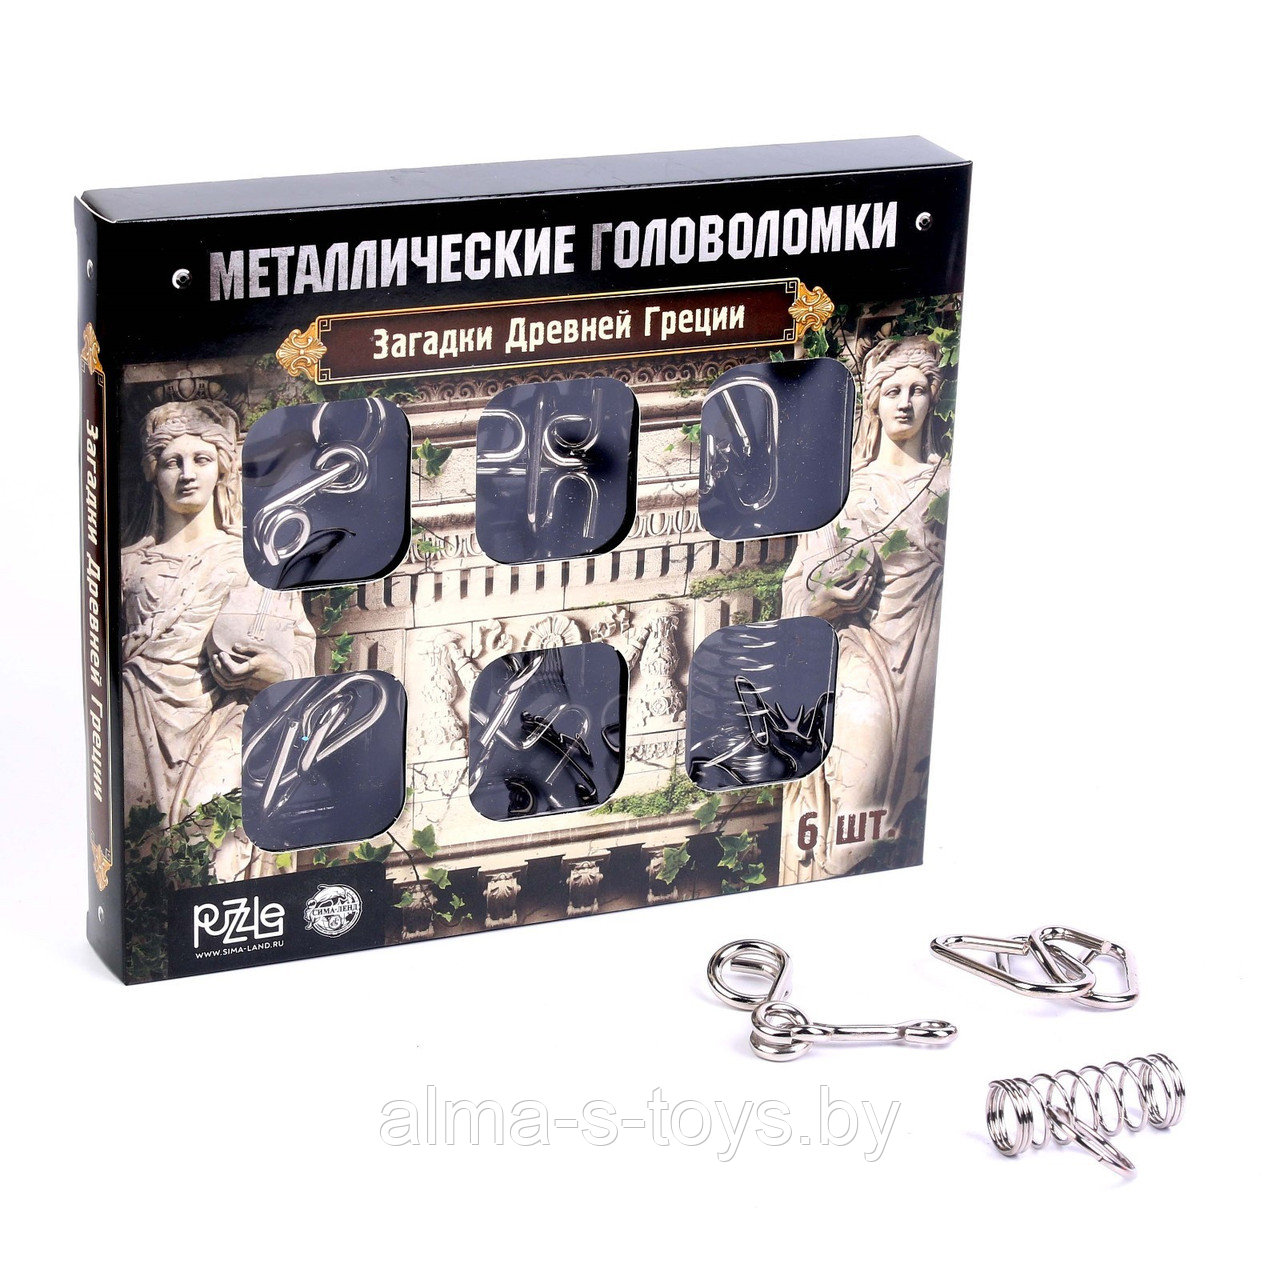 Набор металлических головоломок "Загадки Древней Греции"(6 шт), в ассорименте